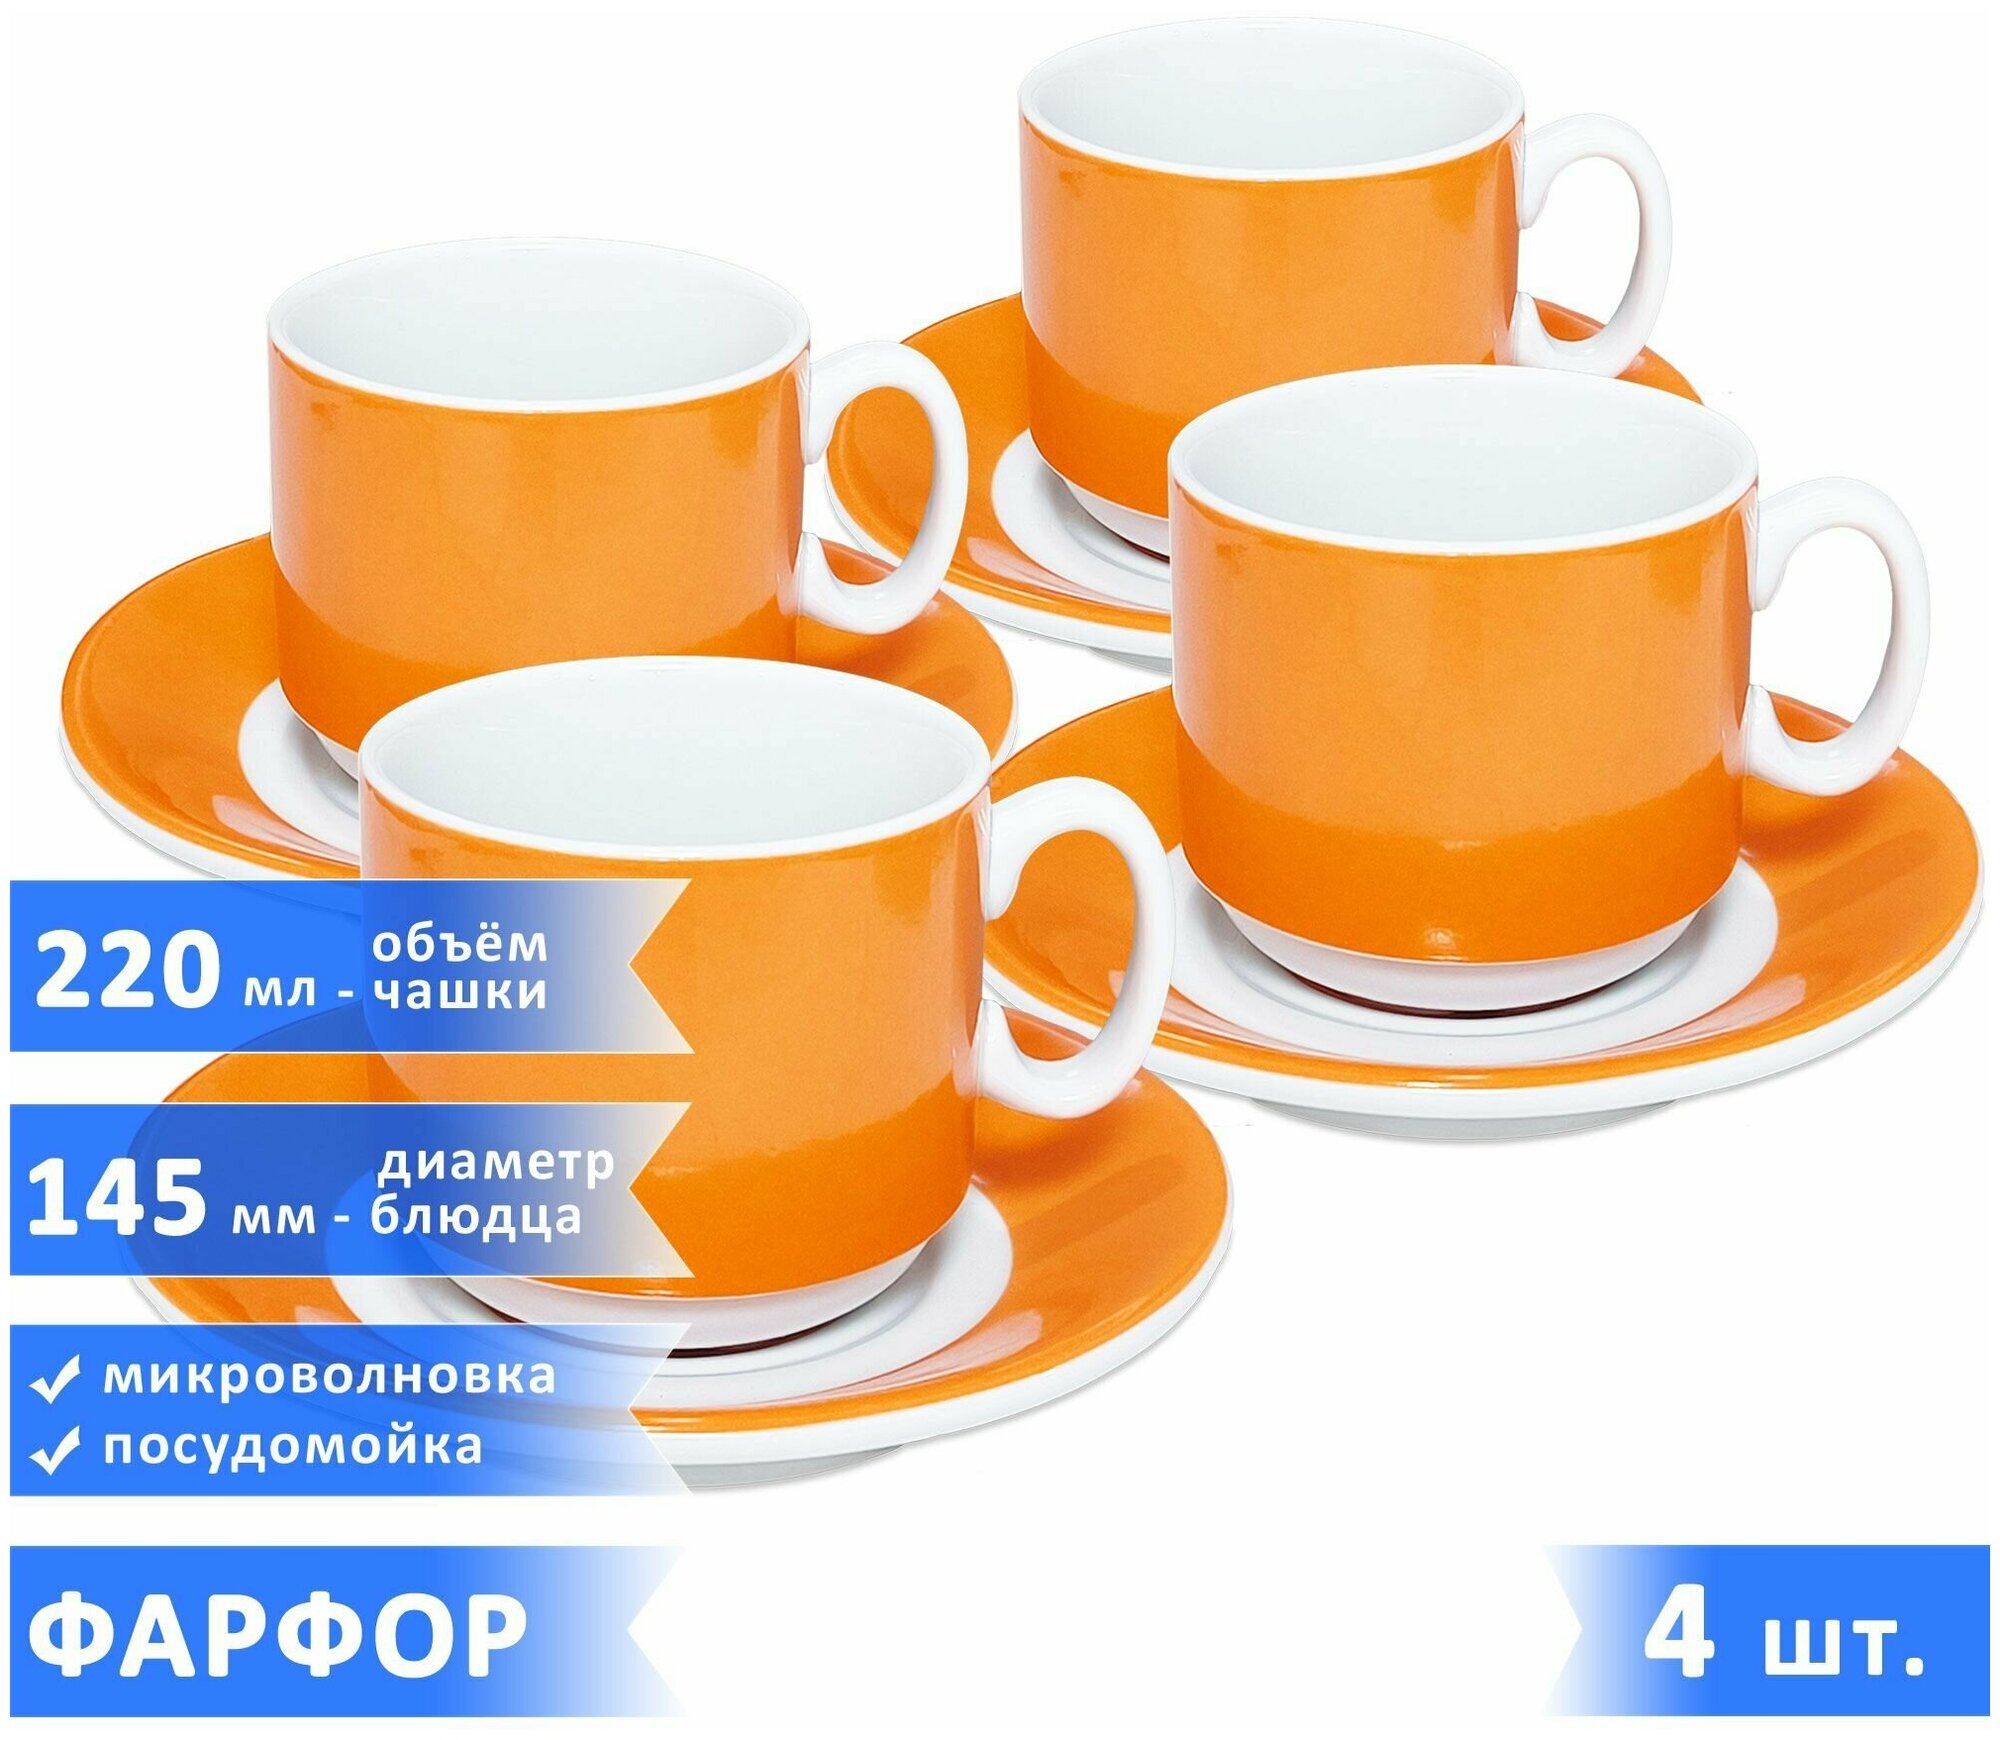 Чайная/кофейная пара "Экспресс Sunrise", набор чашка 220 мл + блюдце, фарфор, оранжевые, 4 шт.